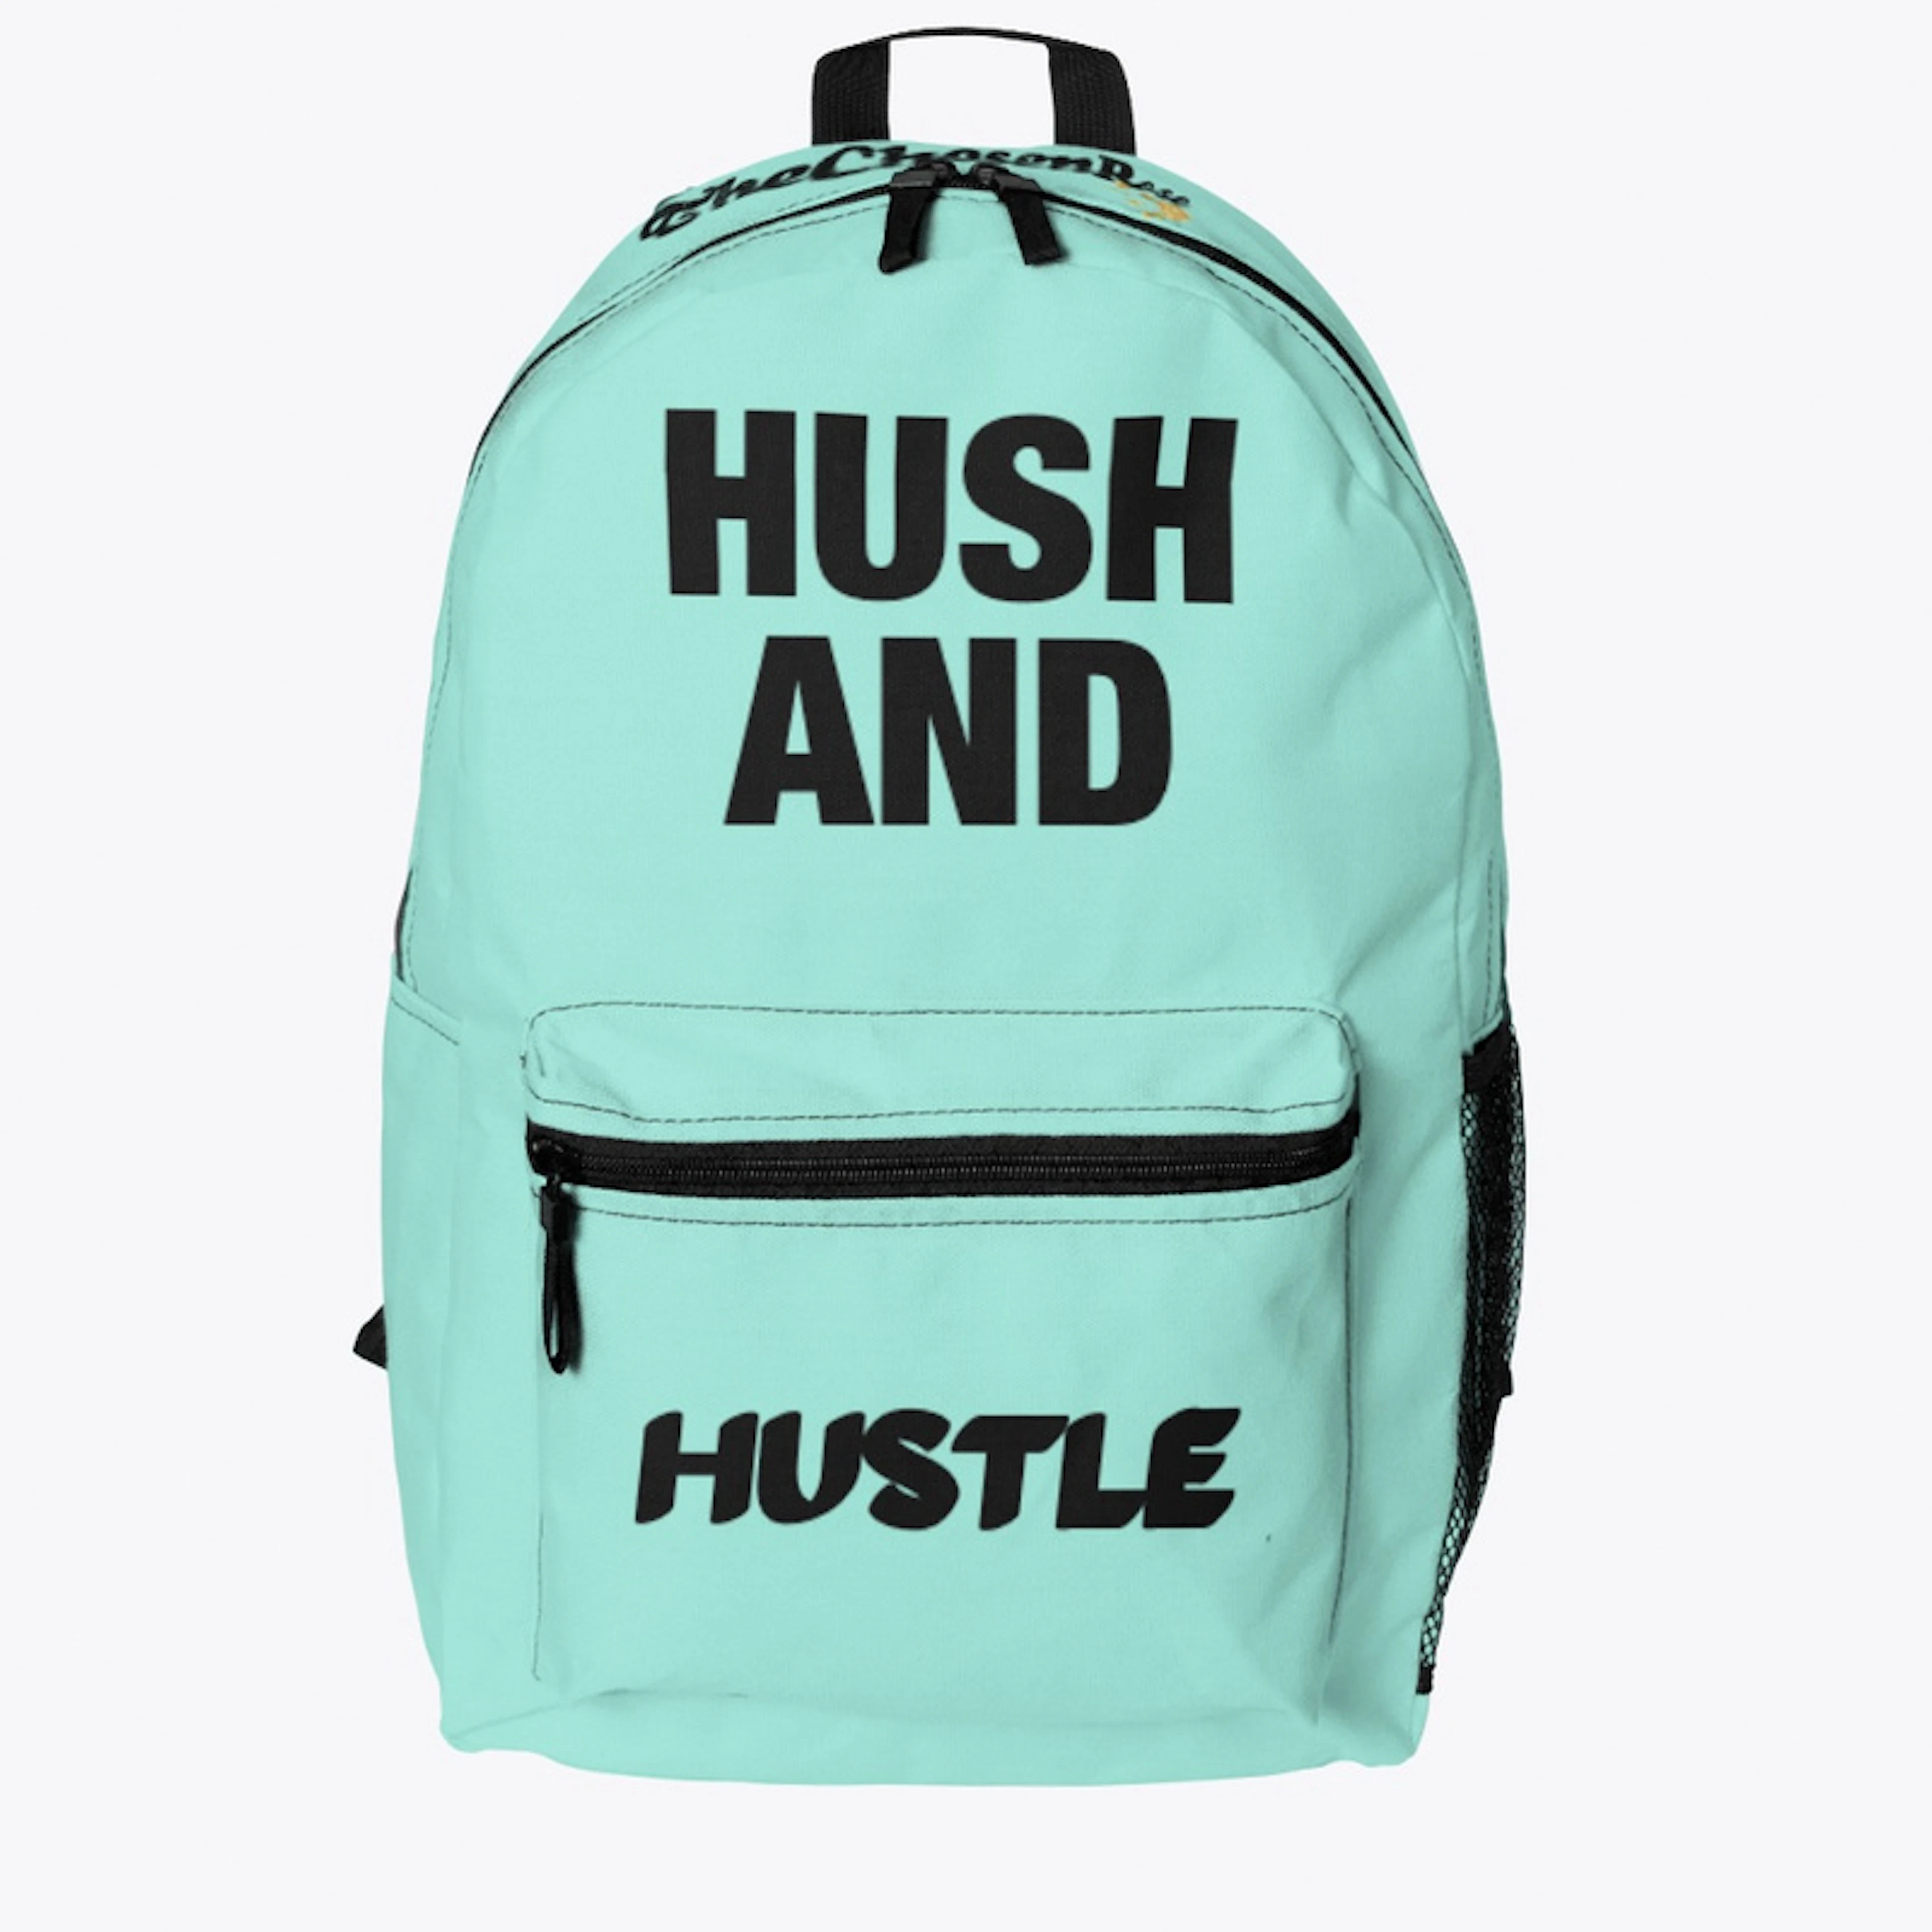 HUSH AND HUSTLE